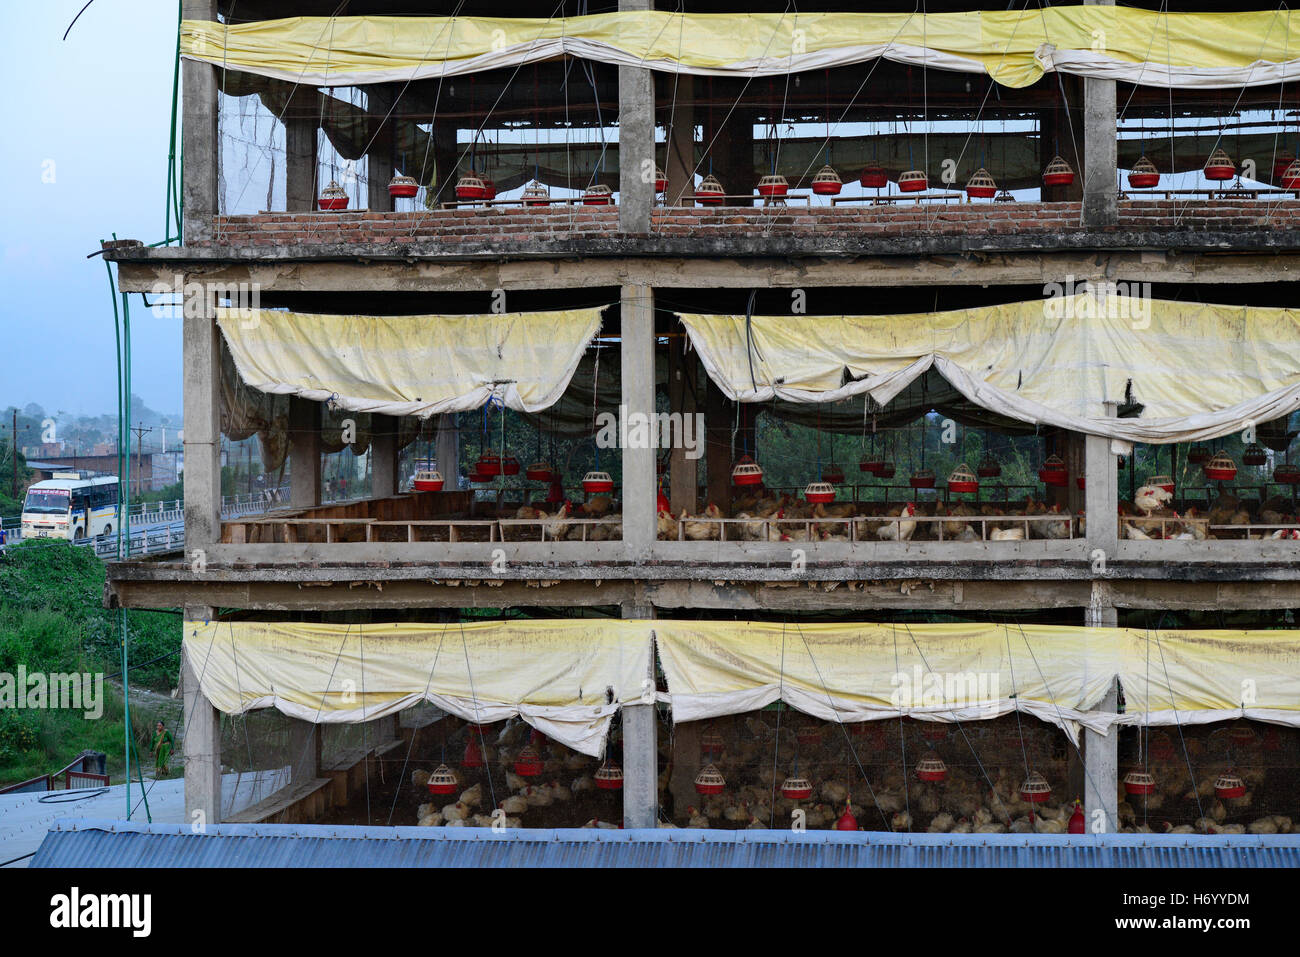 Il Nepal, Tandi, azienda avicola con 3000 pollo in multi-storey house, è stato costruito come un supermercato, ma dal 2013 è utilizzato per i polli di allevamento per la produzione di uova e broiler / Huehnerfarm in einem Hochhaus Foto Stock